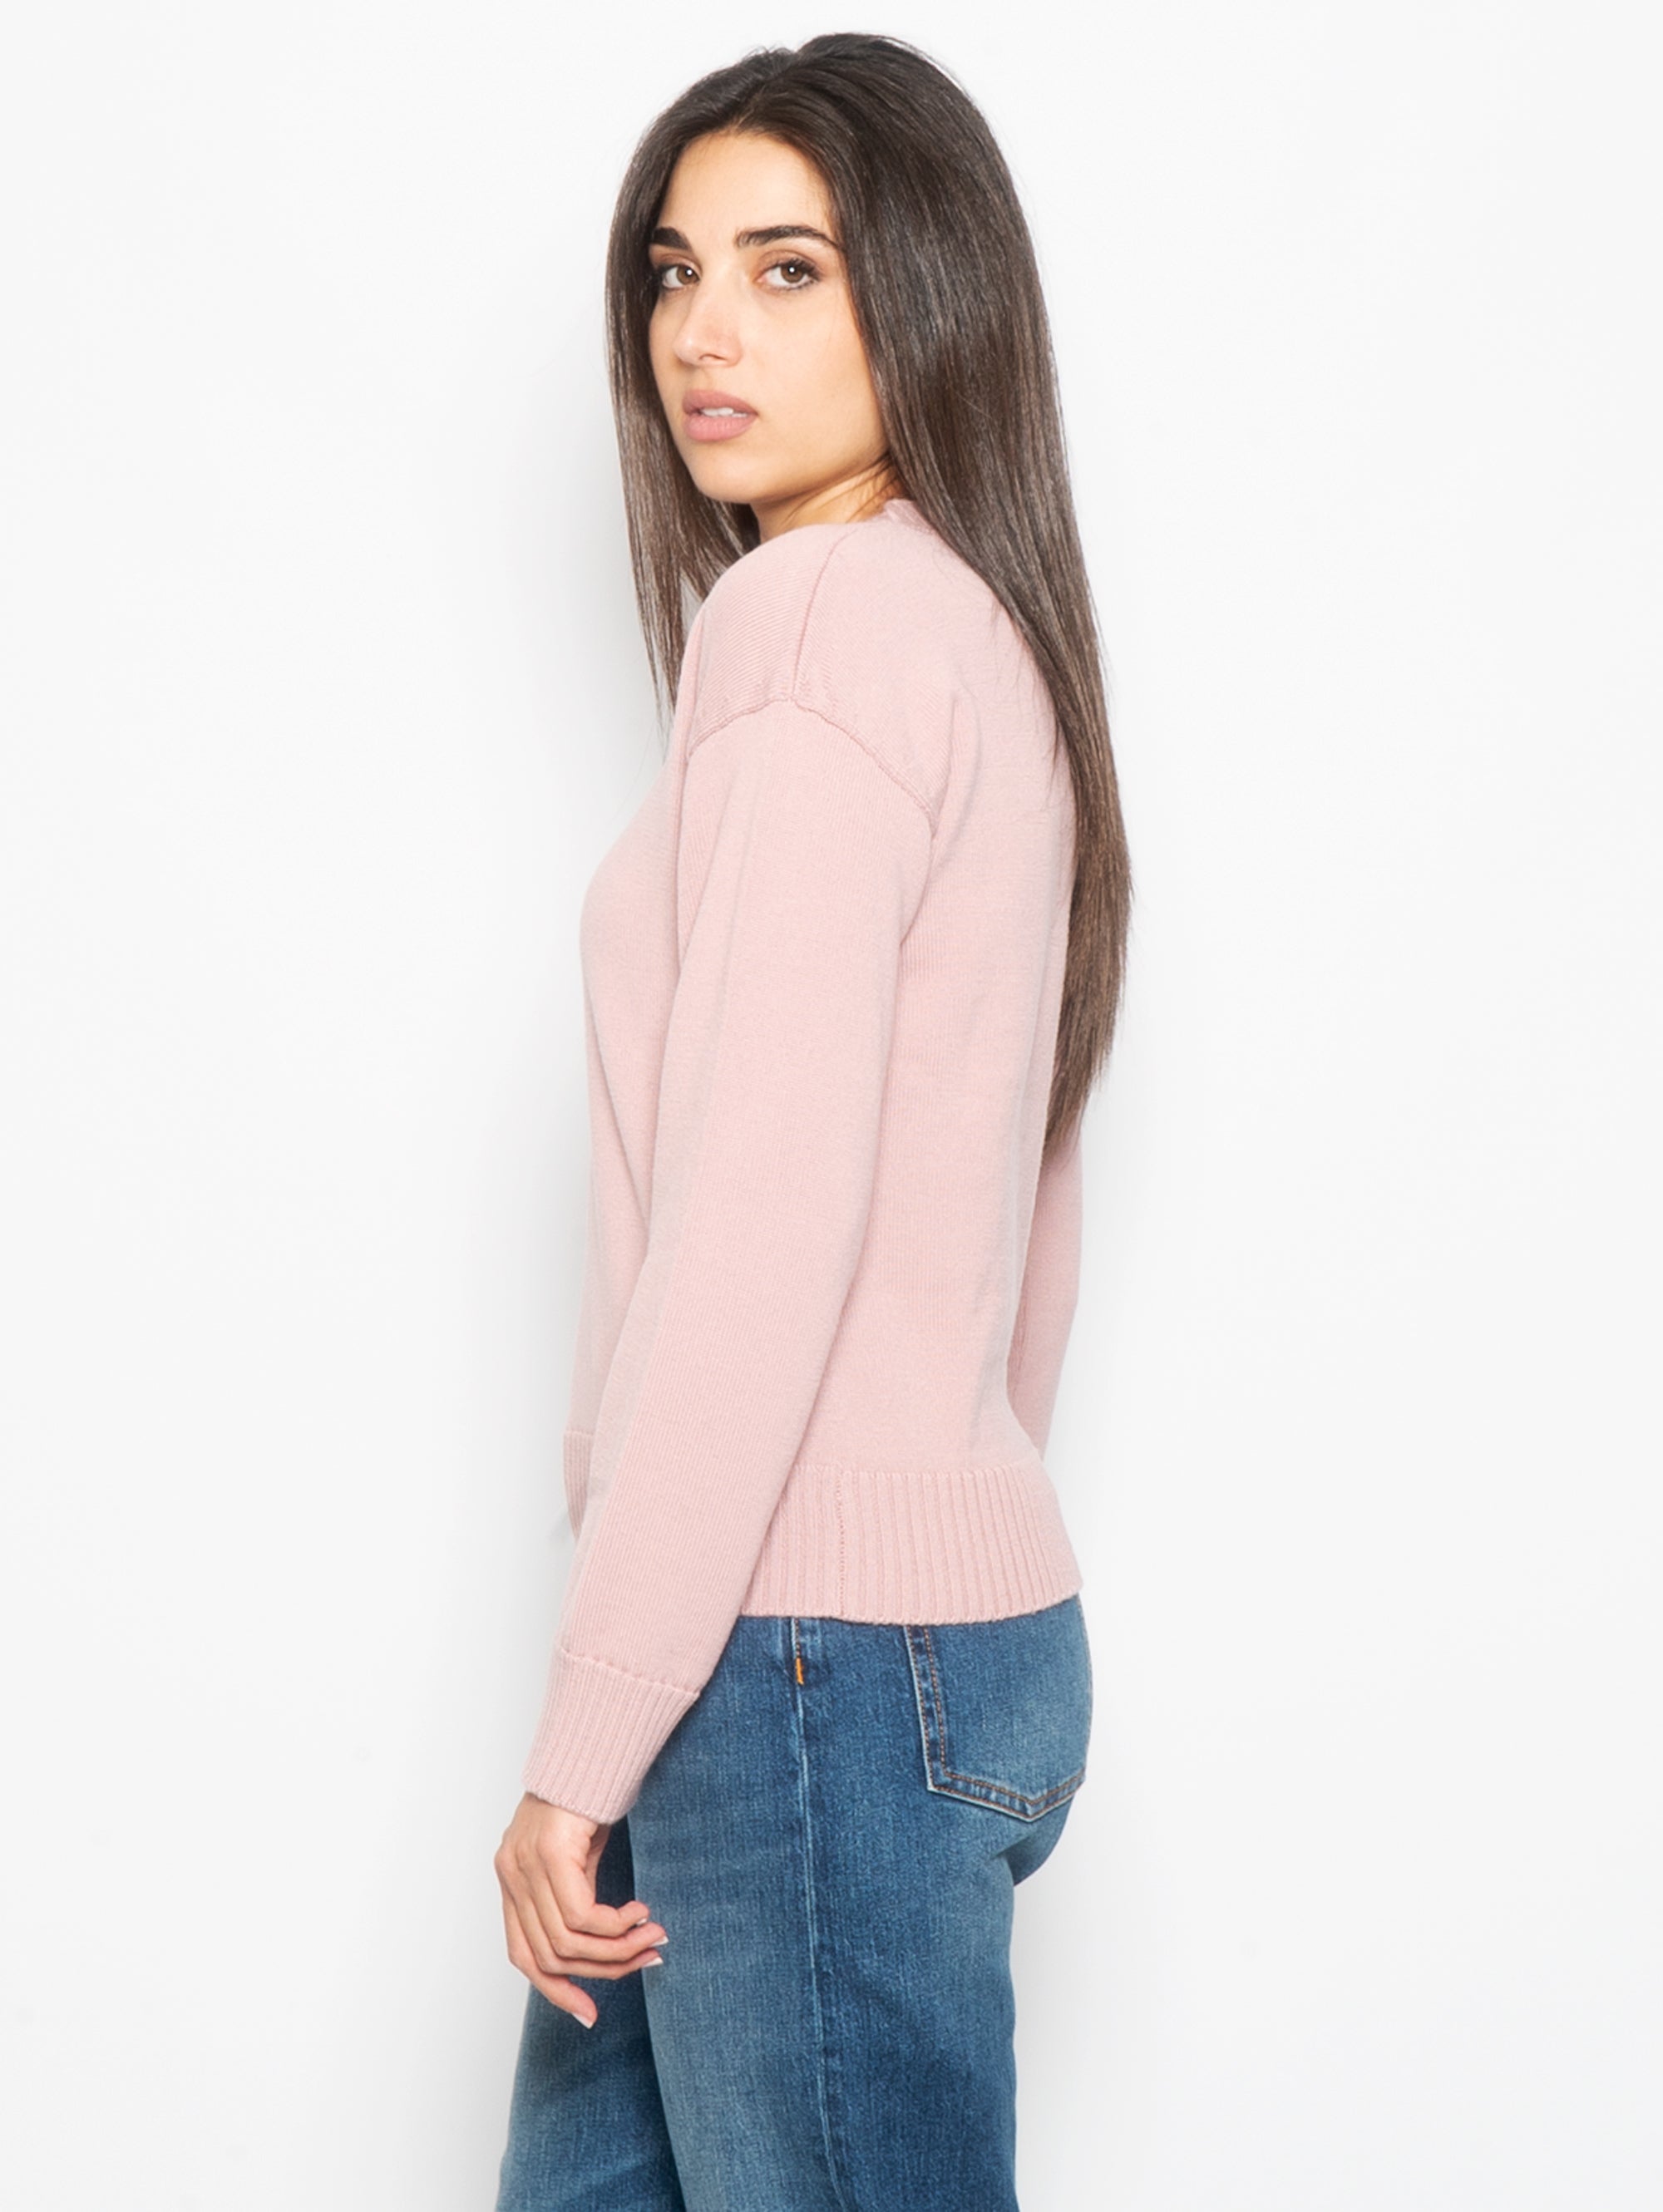 Pink boxy style crewneck sweater